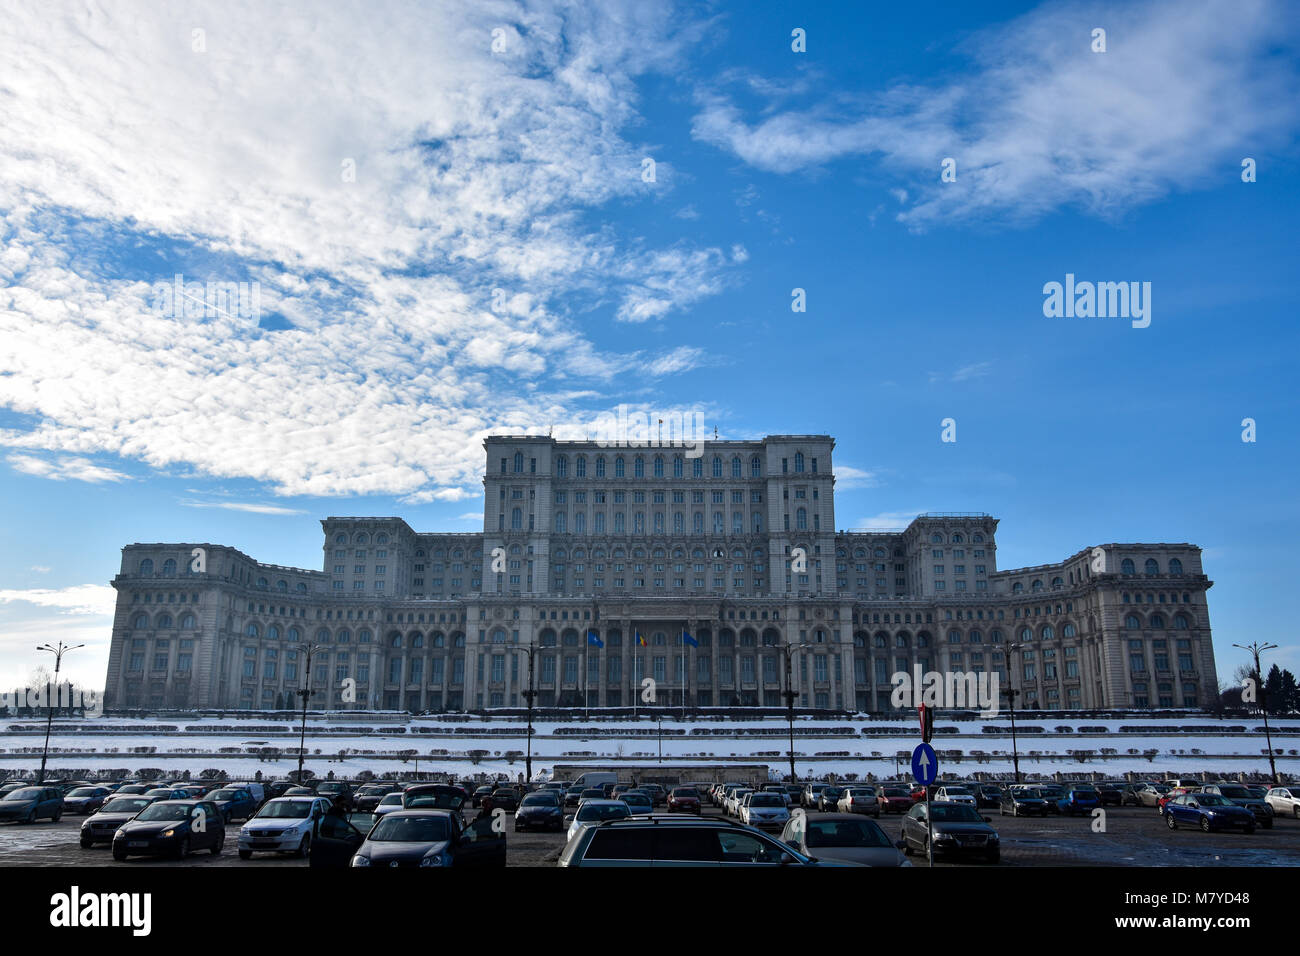 Bucharest, Romania. February 3, 2017. Palace of the Parliament (Palatul Parlamentului din Romania) also known as People's House (Casa Poporului) Stock Photo